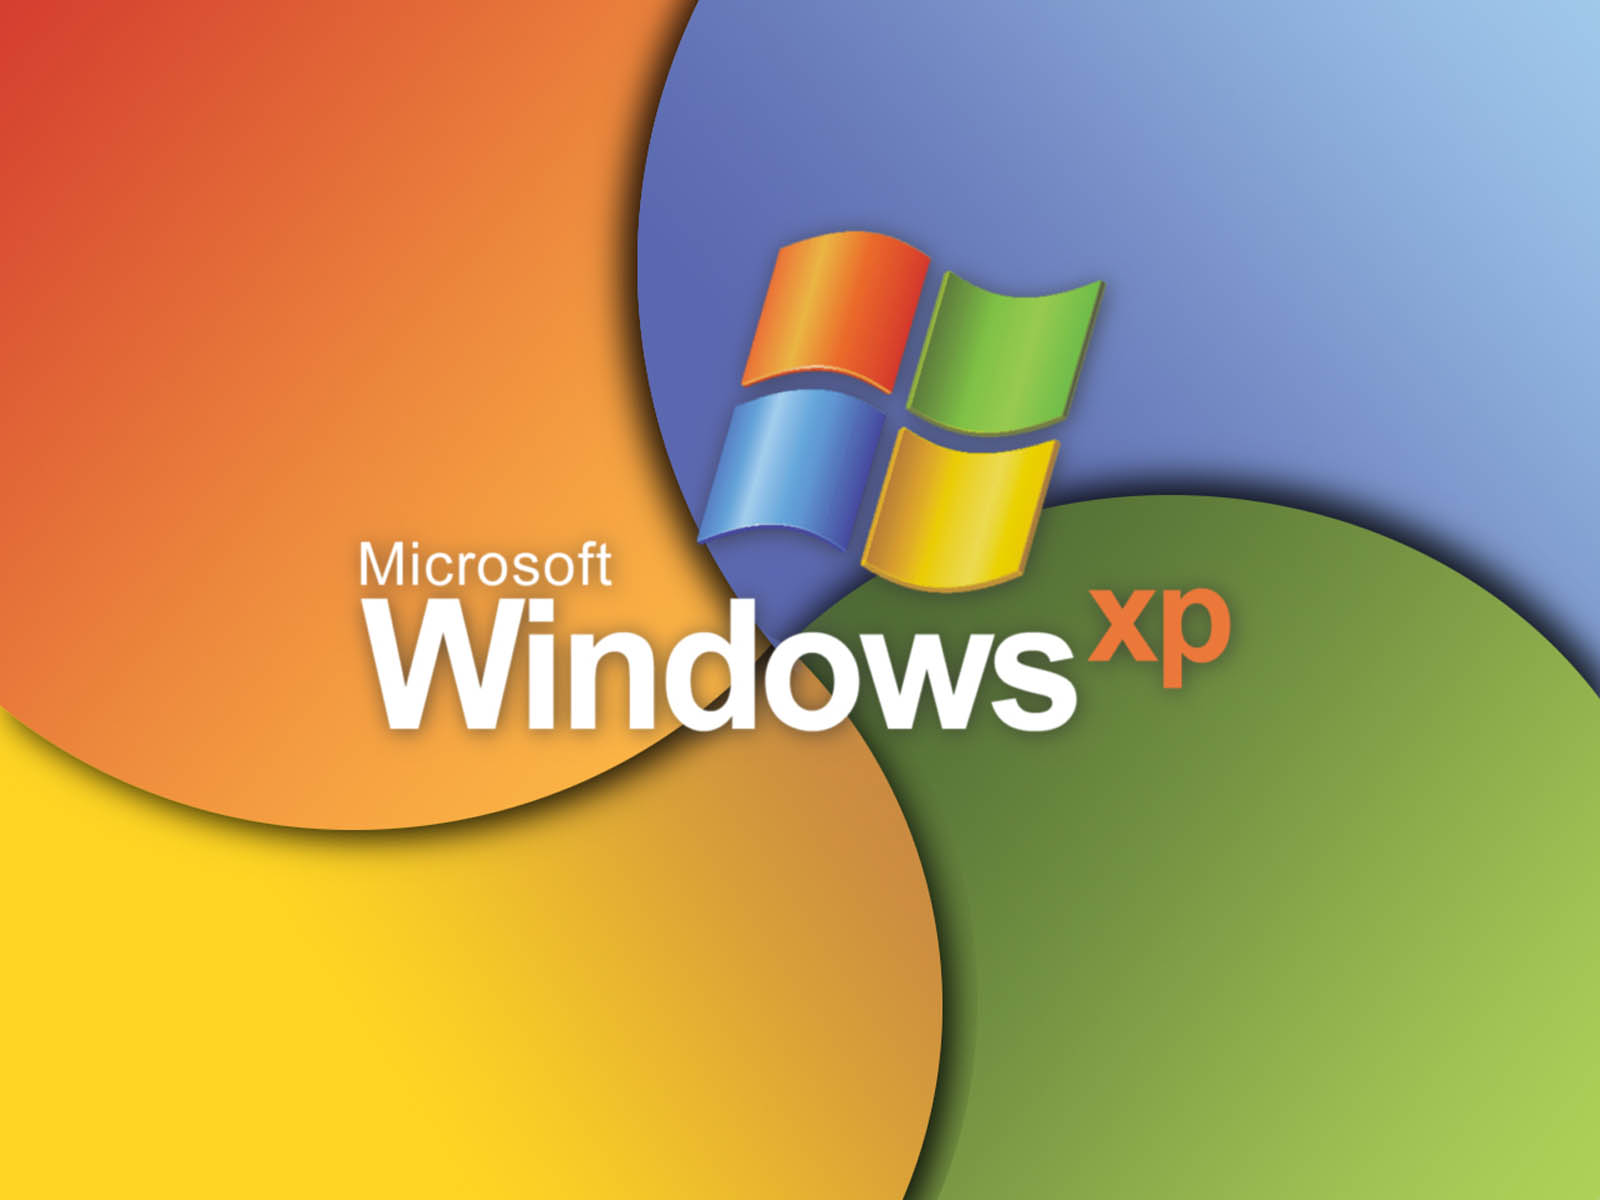 Hình nền Windows XP đã trở thành ký ức đáng nhớ trong những ngày đầu tiên của công nghệ máy tính. Hãy tưởng tượng hình nền đó được thổi hồn lại với độ phân giải cao hơn và đầy đủ sức sống, mang đến cho bạn những buổi sáng tươi đẹp và những kỉ niệm của quá khứ đẹp nhất bạn đã từng có.